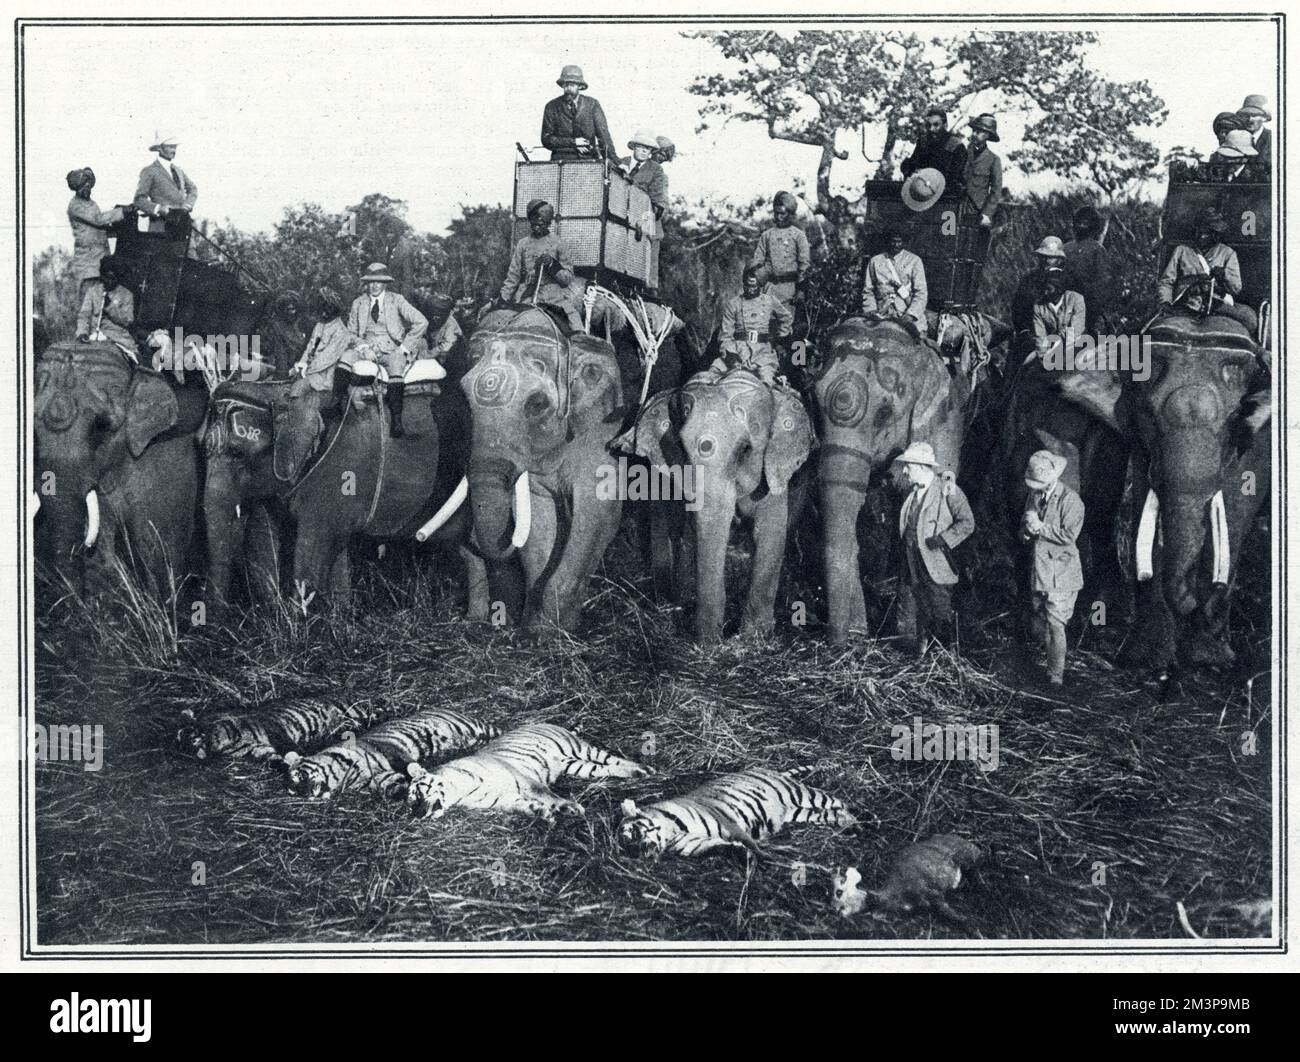 Le roi George V, lors d'une expédition de chasse au gros gibier en Inde, au Népal, (photographié ici à Howdah du gros éléphant au centre), inspectant les résultats d'un sport du matin comprenant quatre tigres. Date: 1911 Banque D'Images